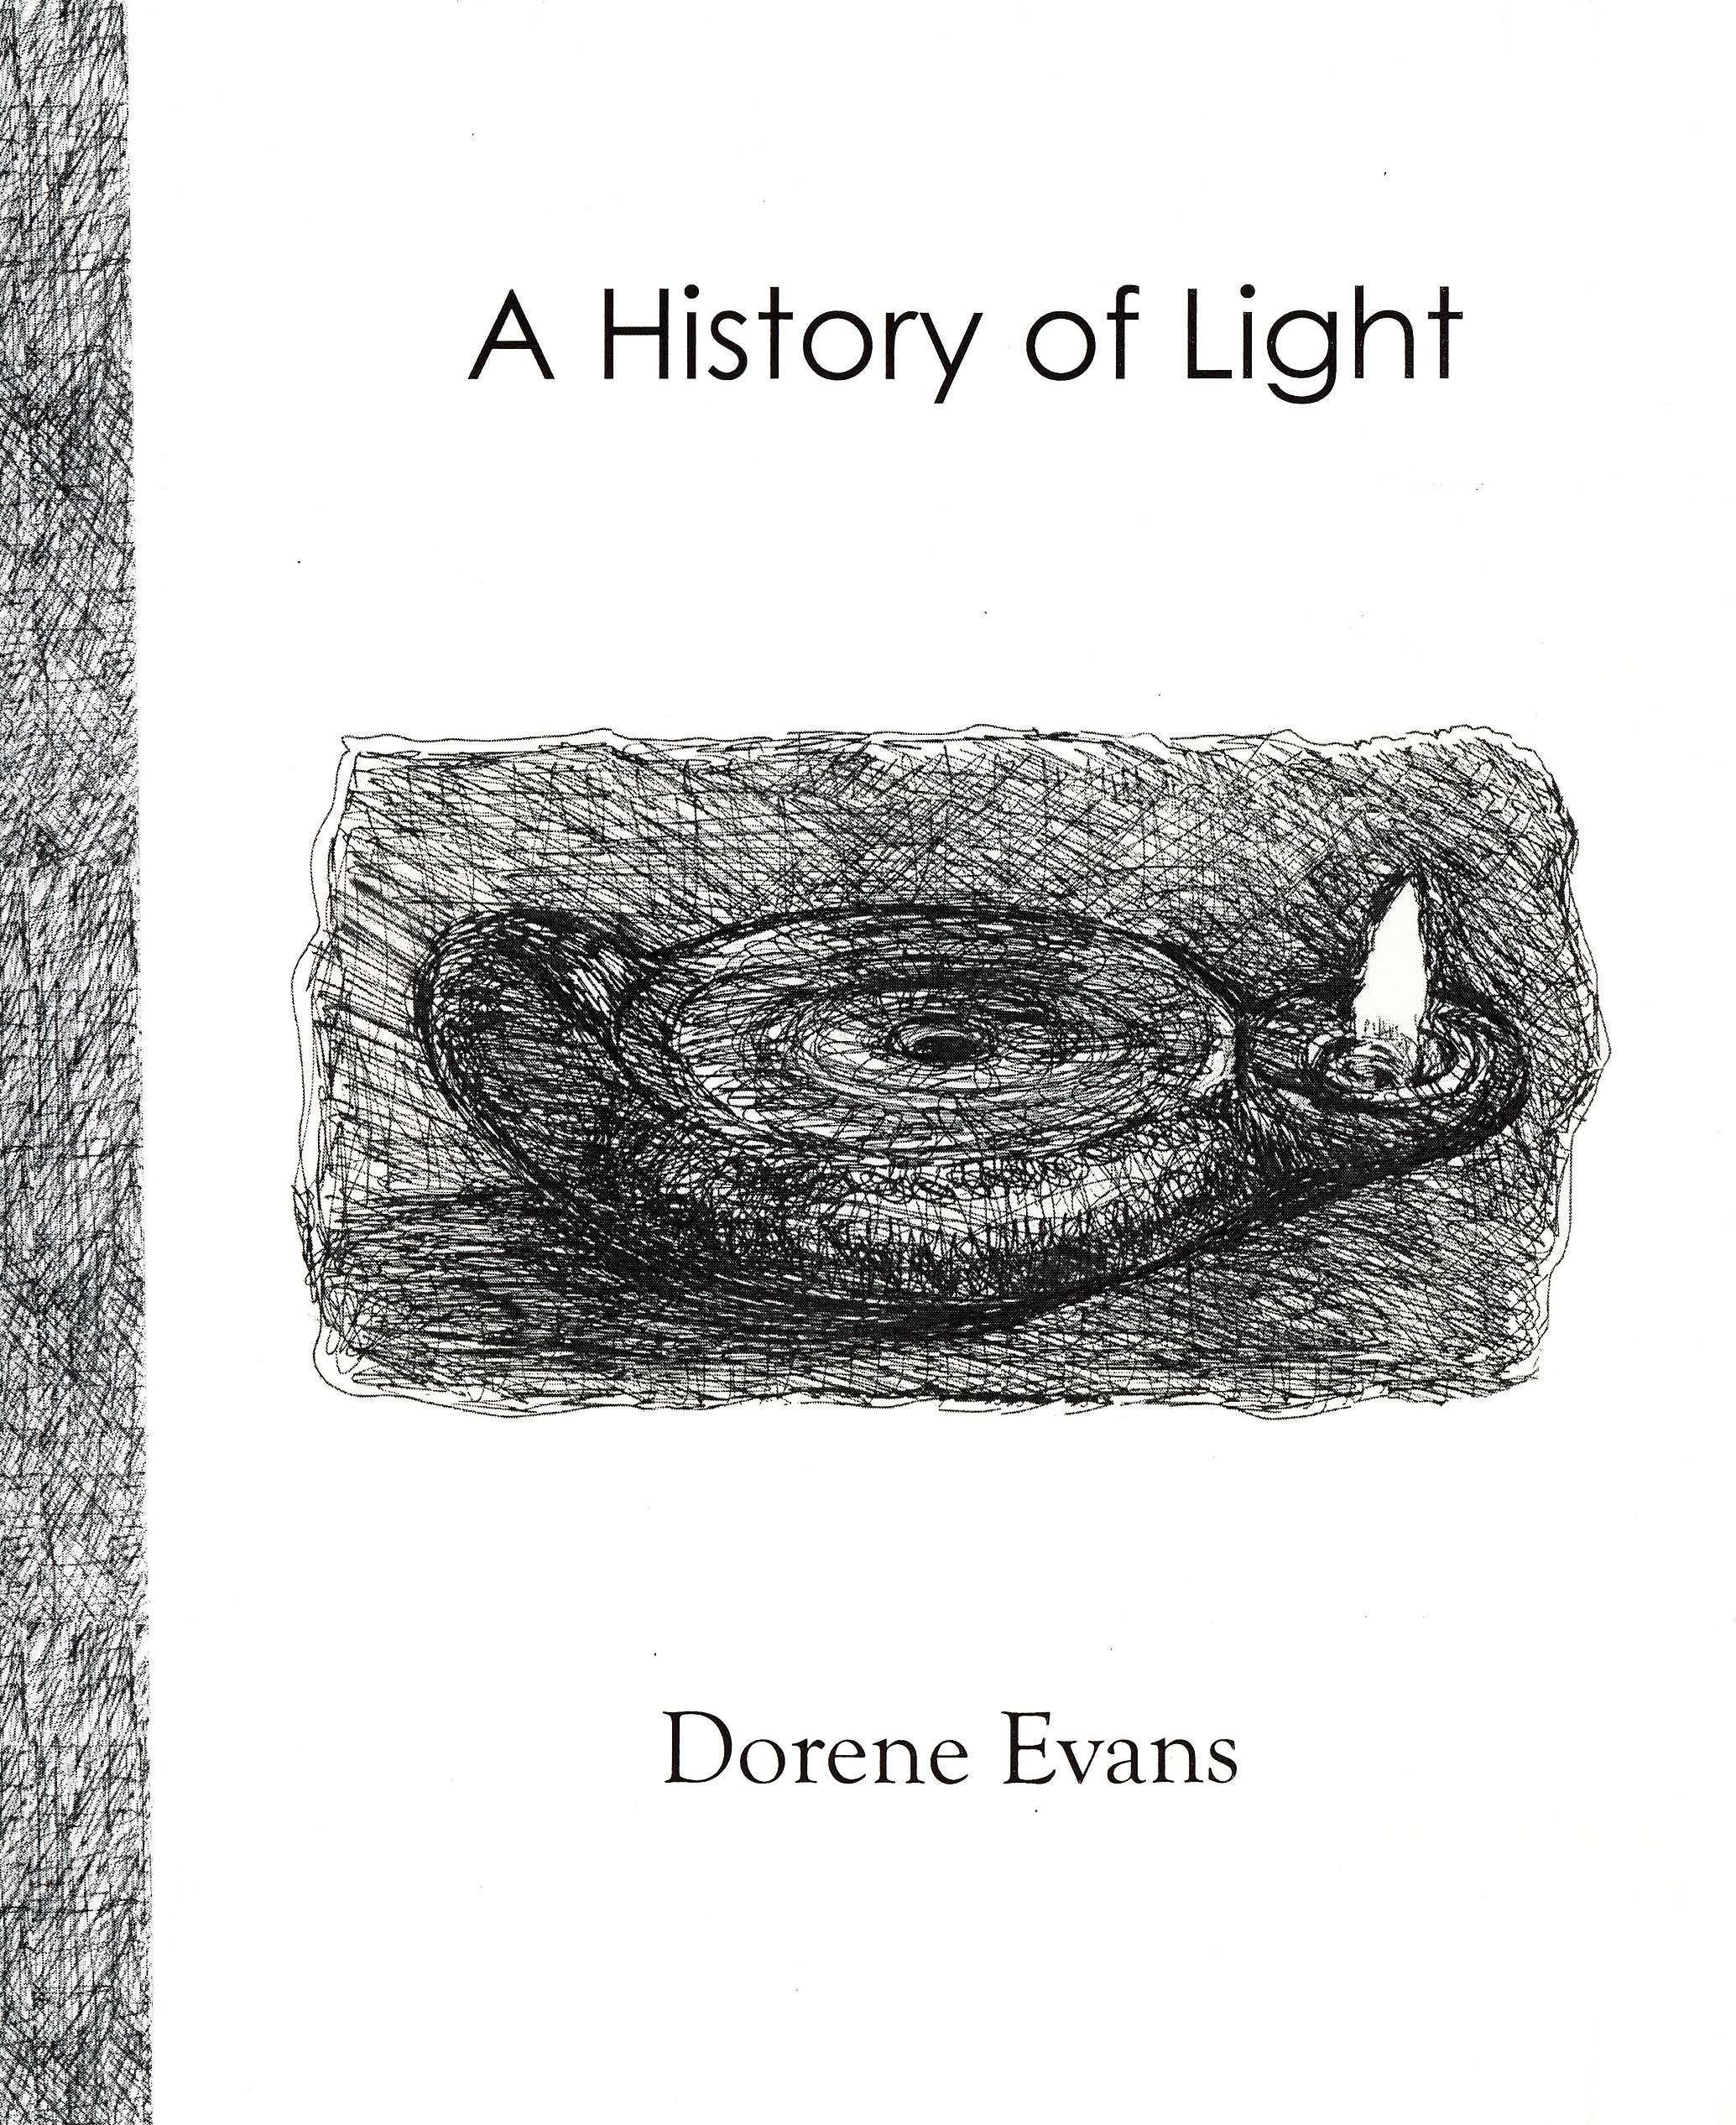 History of Light